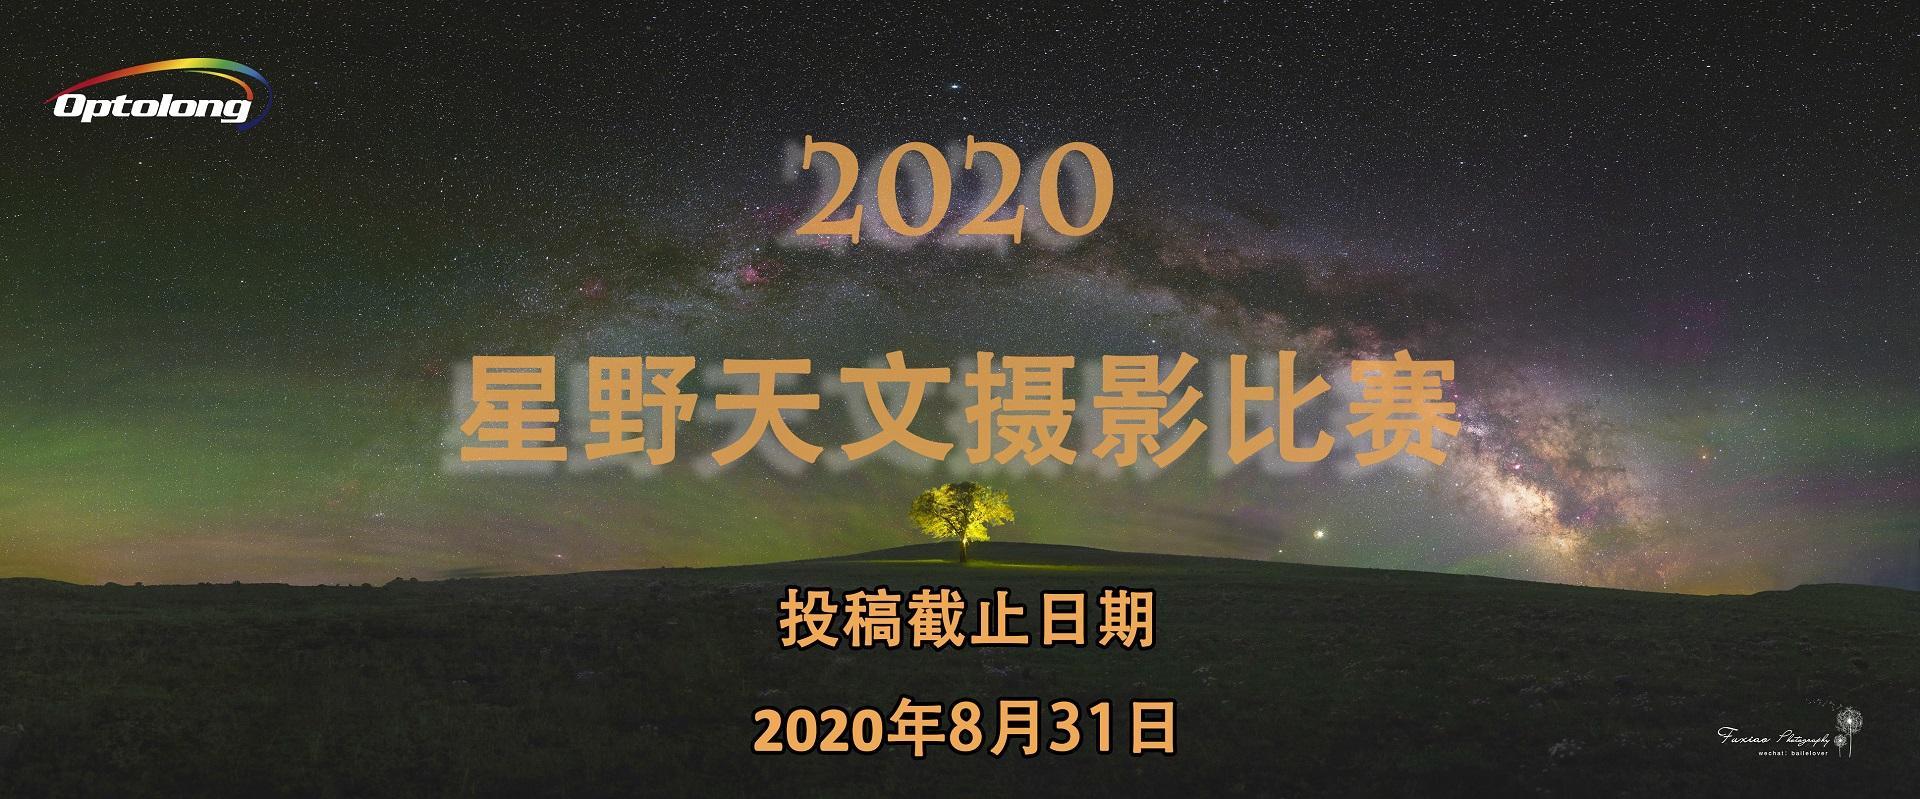 【获奖公布】 2020年Starryscape Dream天文星野摄影比赛